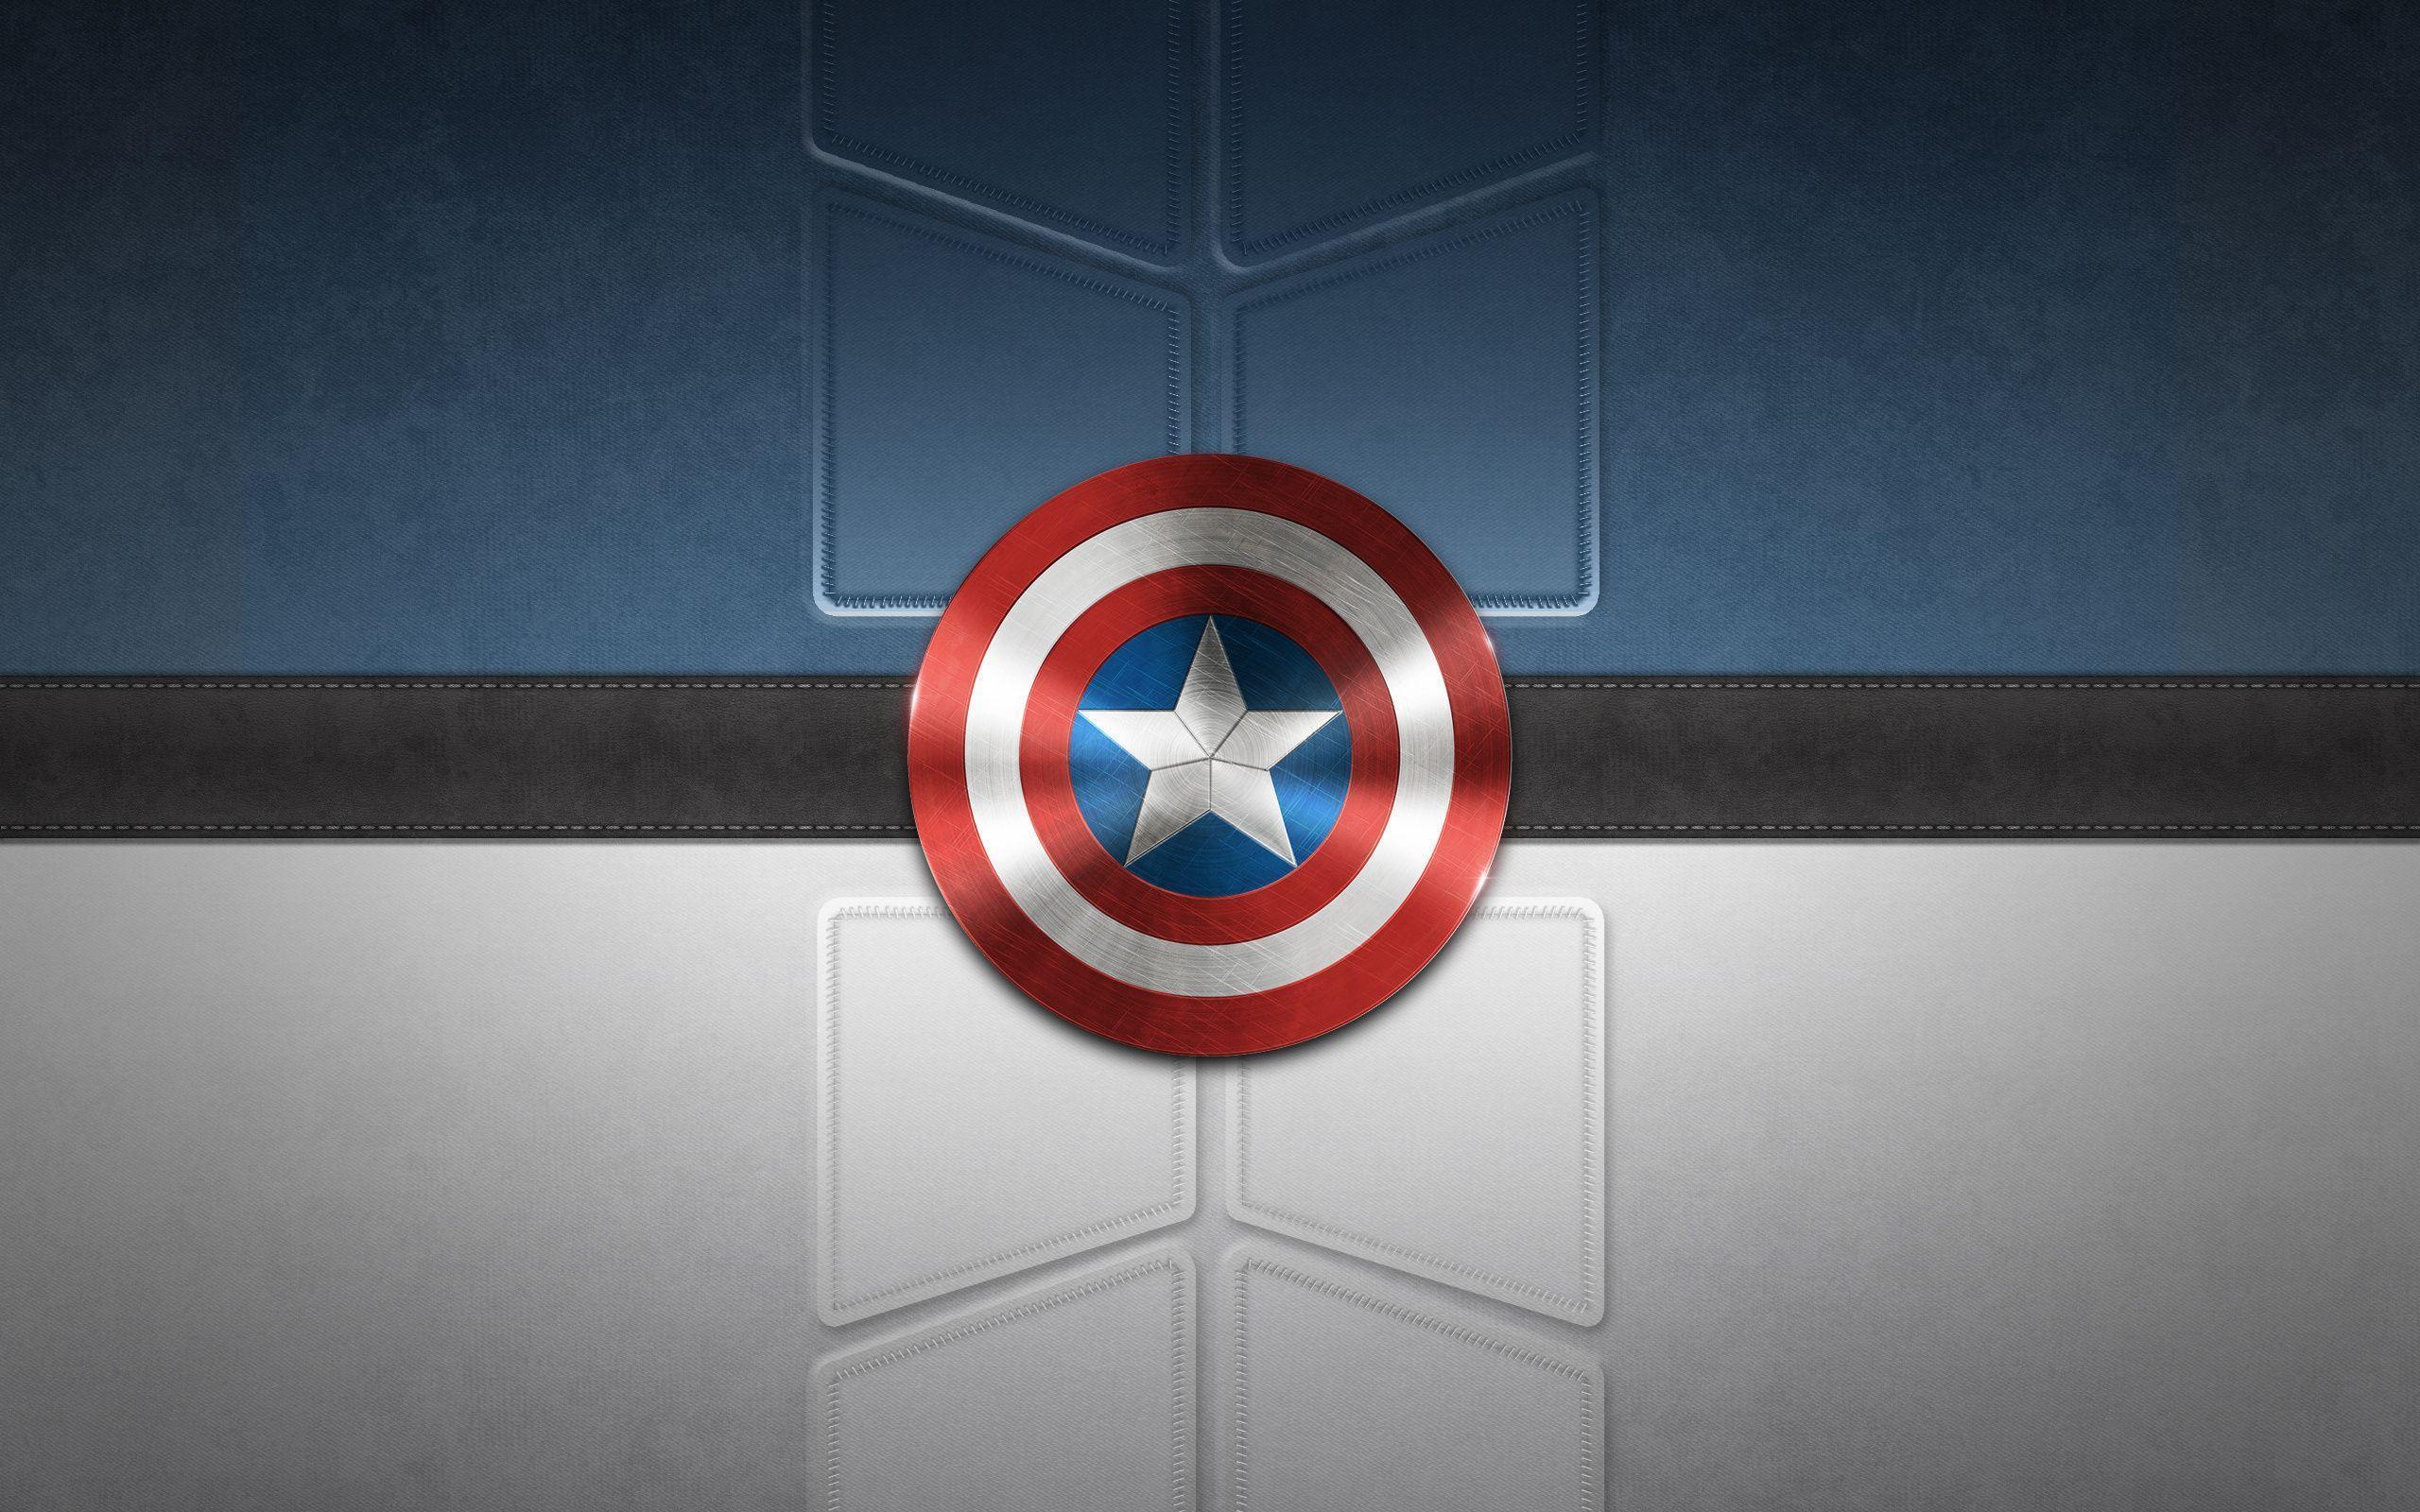 Fondos de pantalla del Capitán América - FondosMil